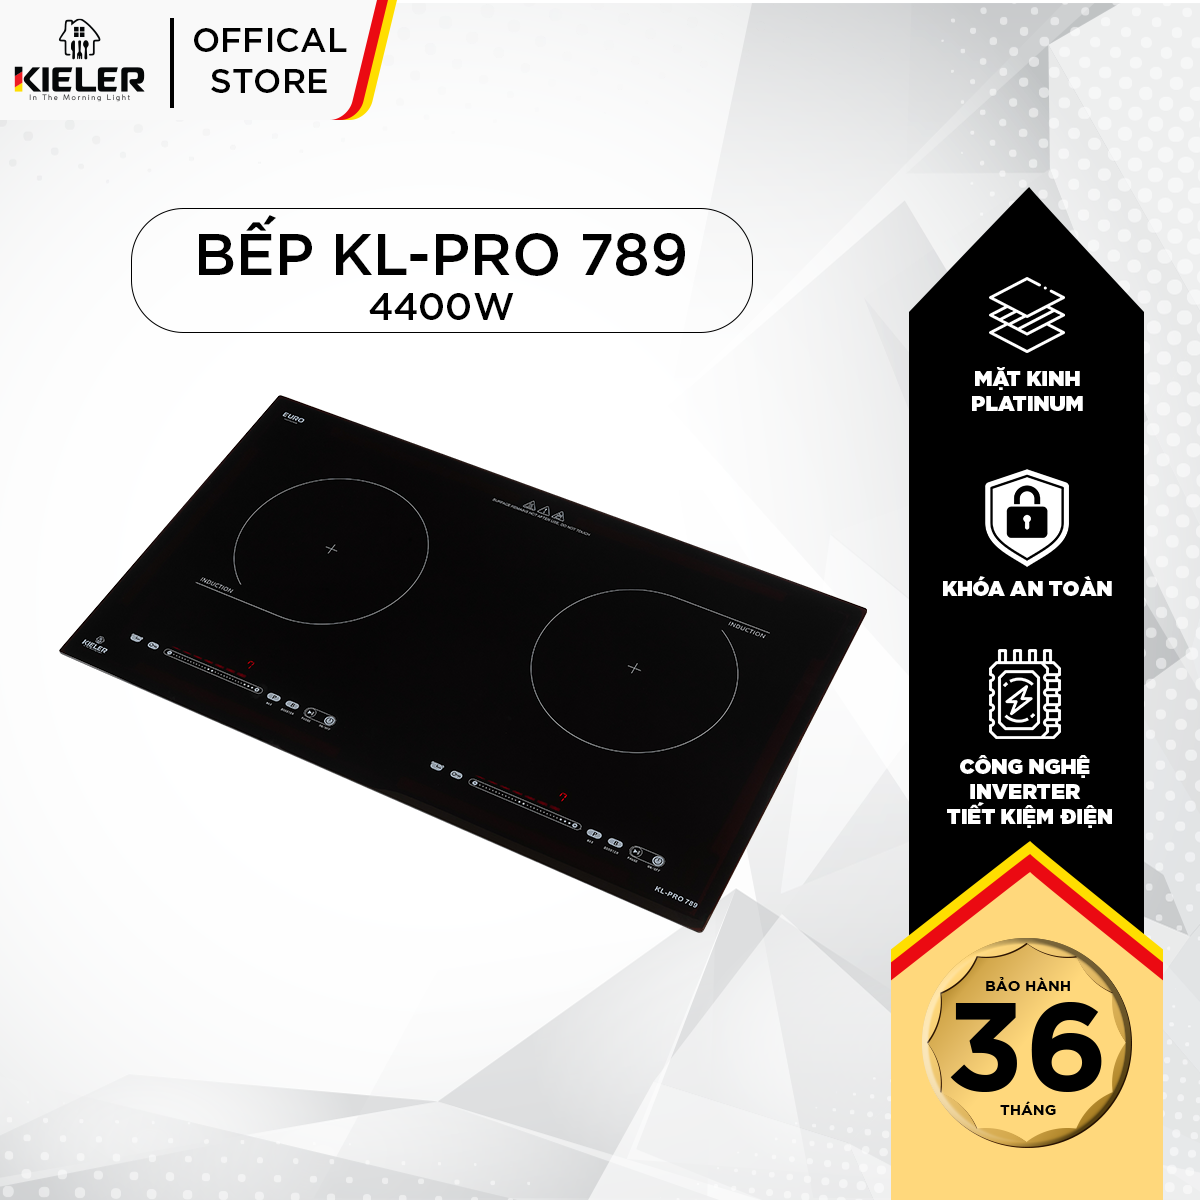 Bếp đôi điện từ Kieler KL-PLUS789 mặt kính Euro Kieler Platinum, Bếp điện từ 4400W có chế độ cảm ứng chống tràn an toàn - Hàng Chính Hãng